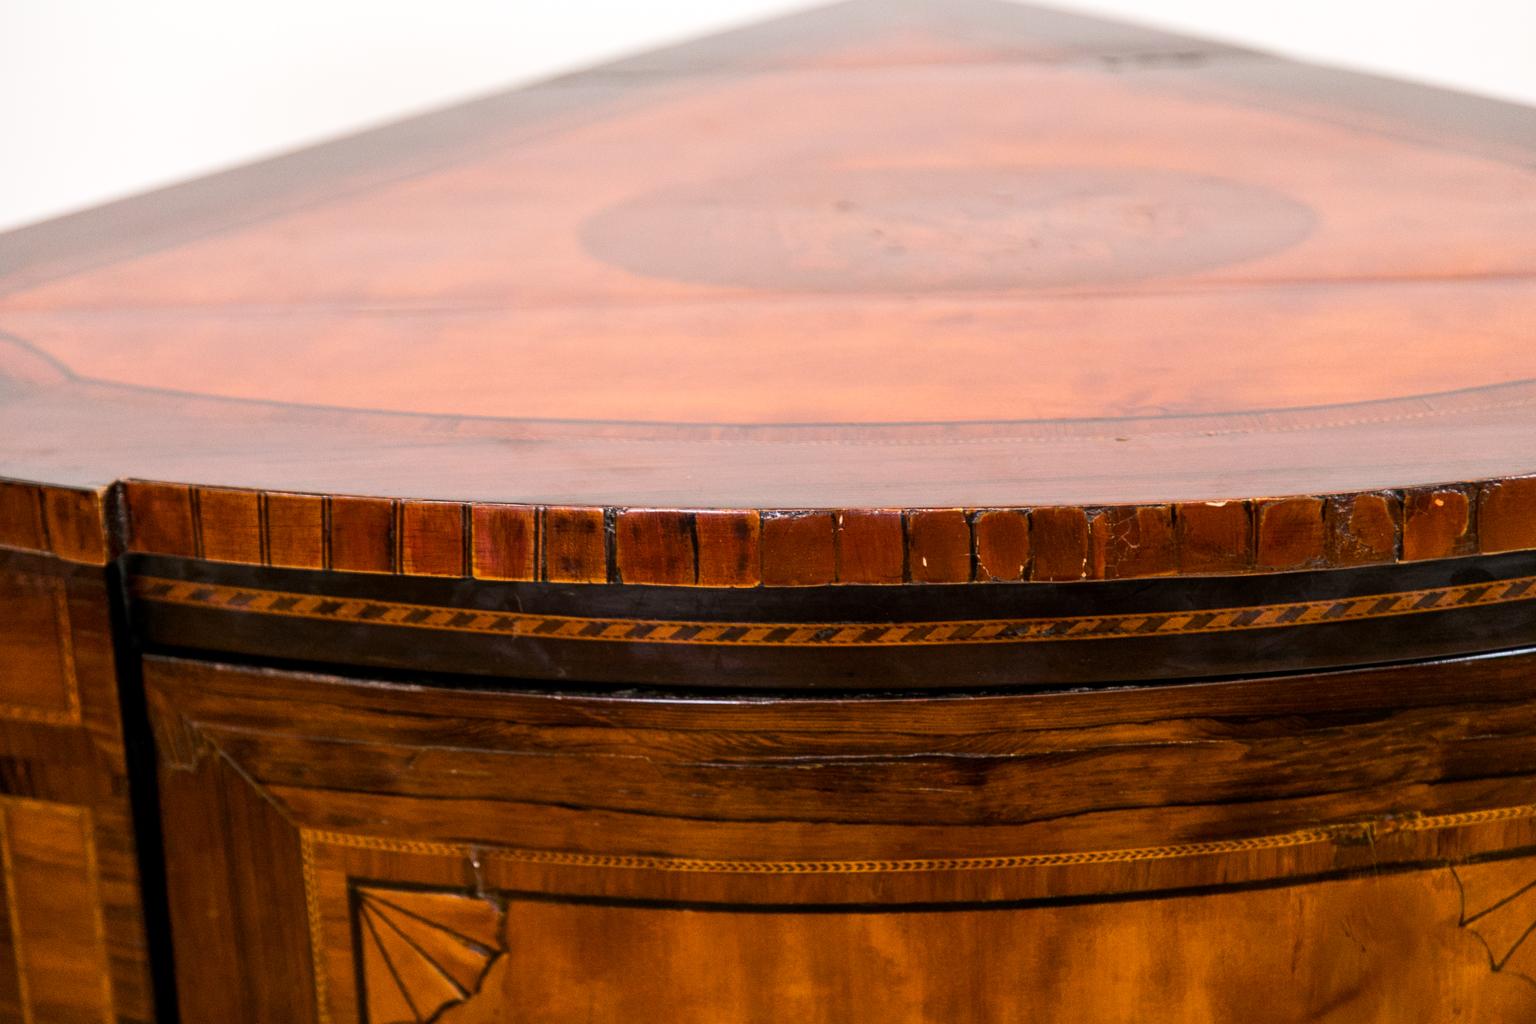 Le dessus de ce meuble d'angle à façade en arc marqueté est bordé de bois de rose avec un panneau central en bois de satin en forme d'aile d'abeille qui est incrusté d'instruments de musique. Le panneau en bois de satin est bordé d'ébène et de